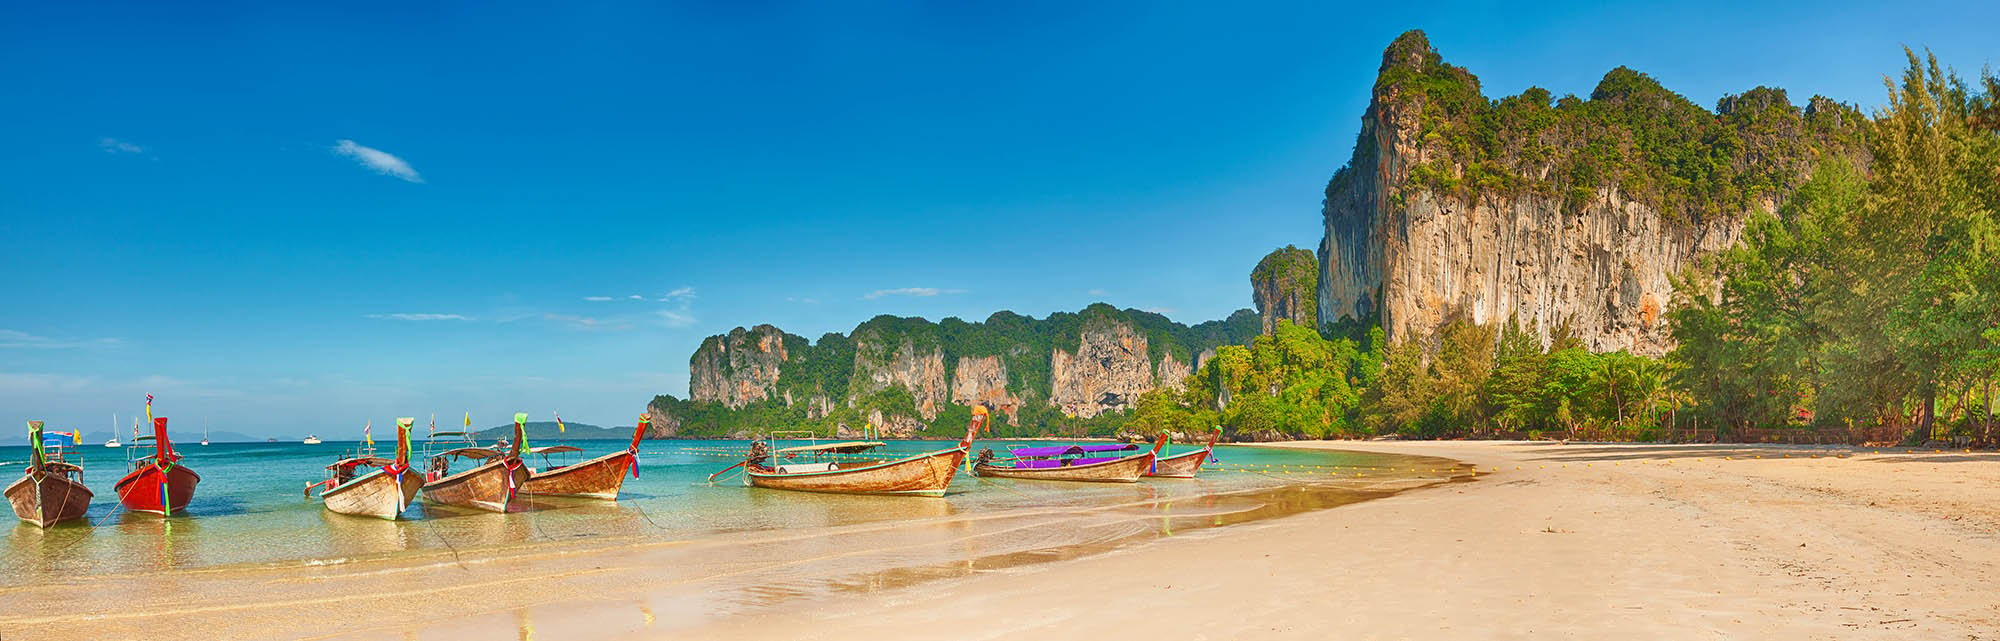 Thailand panorama